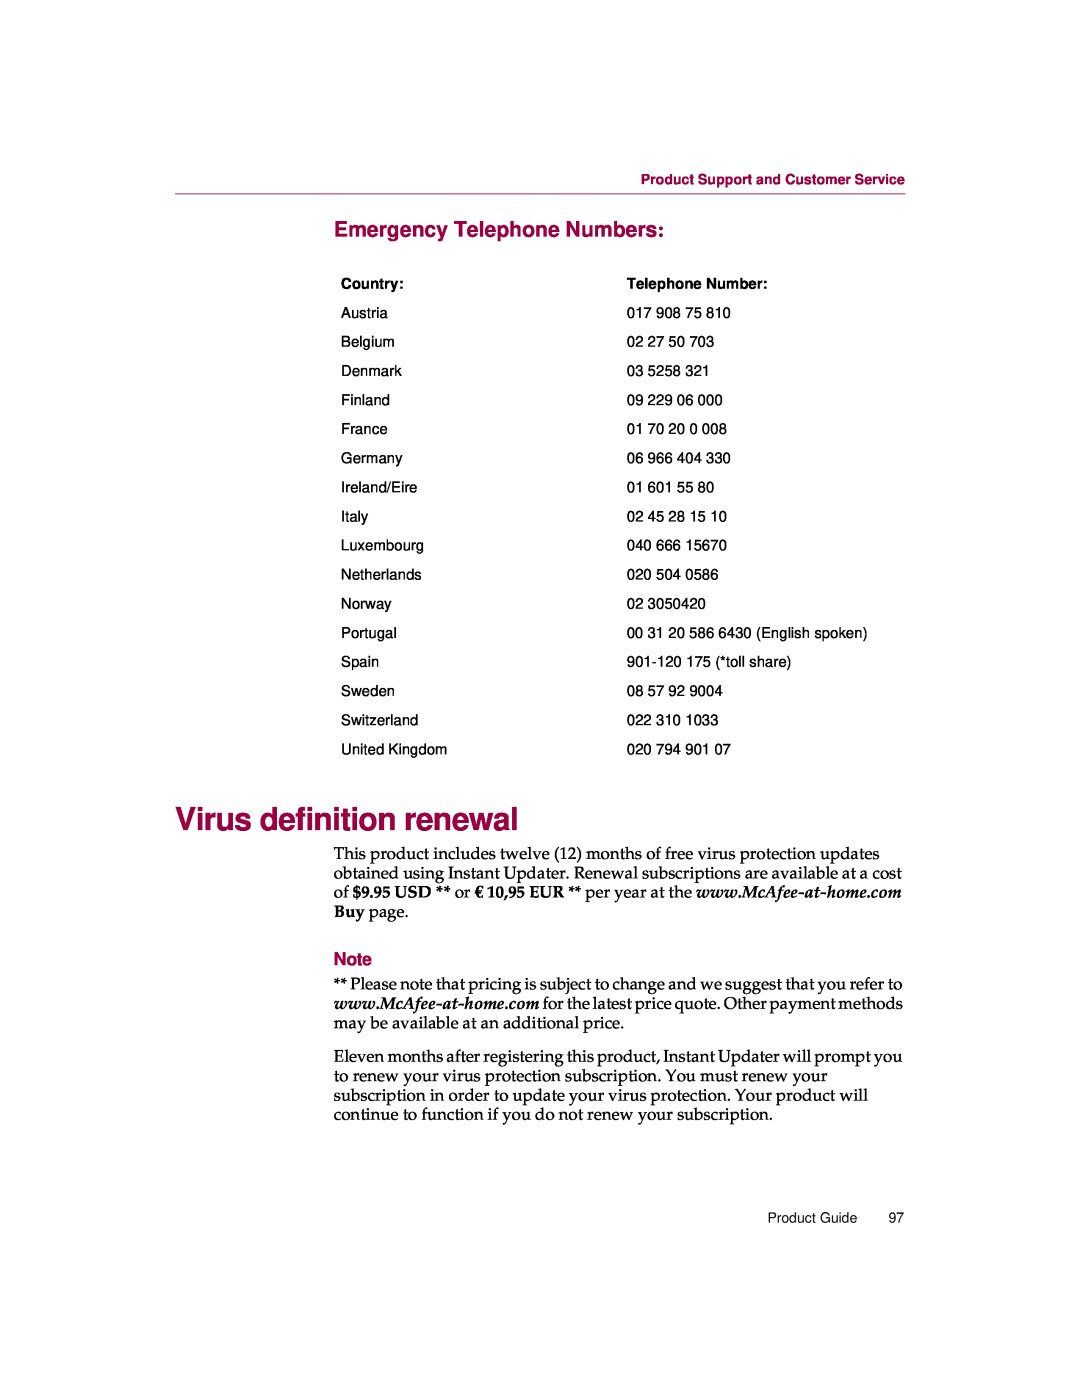 McAfee 5 manual Virus definition renewal, Emergency Telephone Numbers 